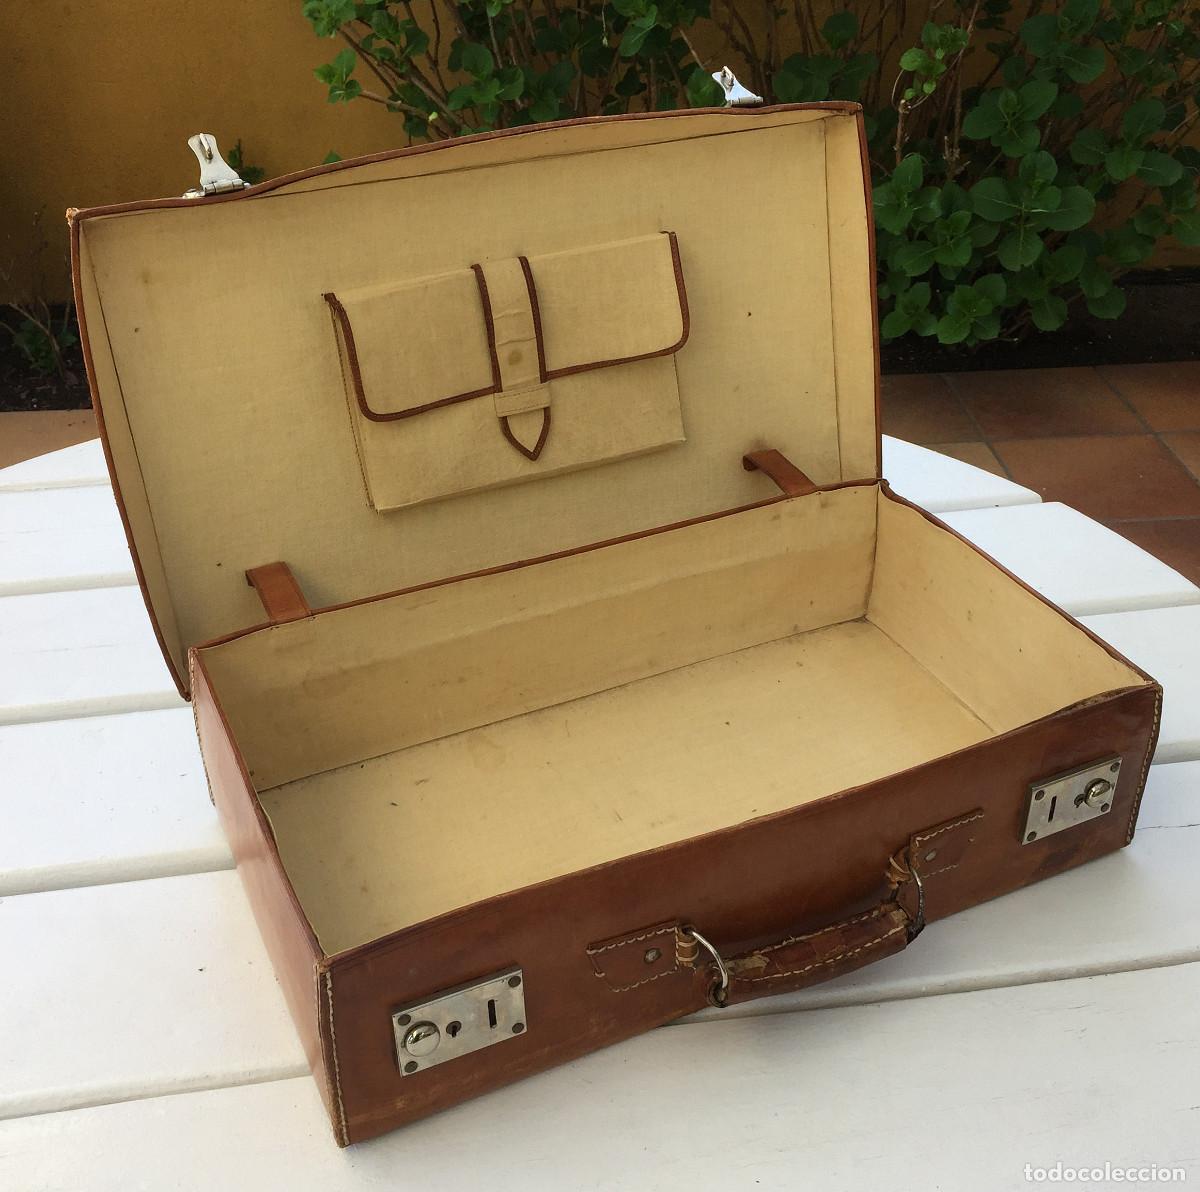 maleta de viaje, pequeña - Compra venta en todocoleccion